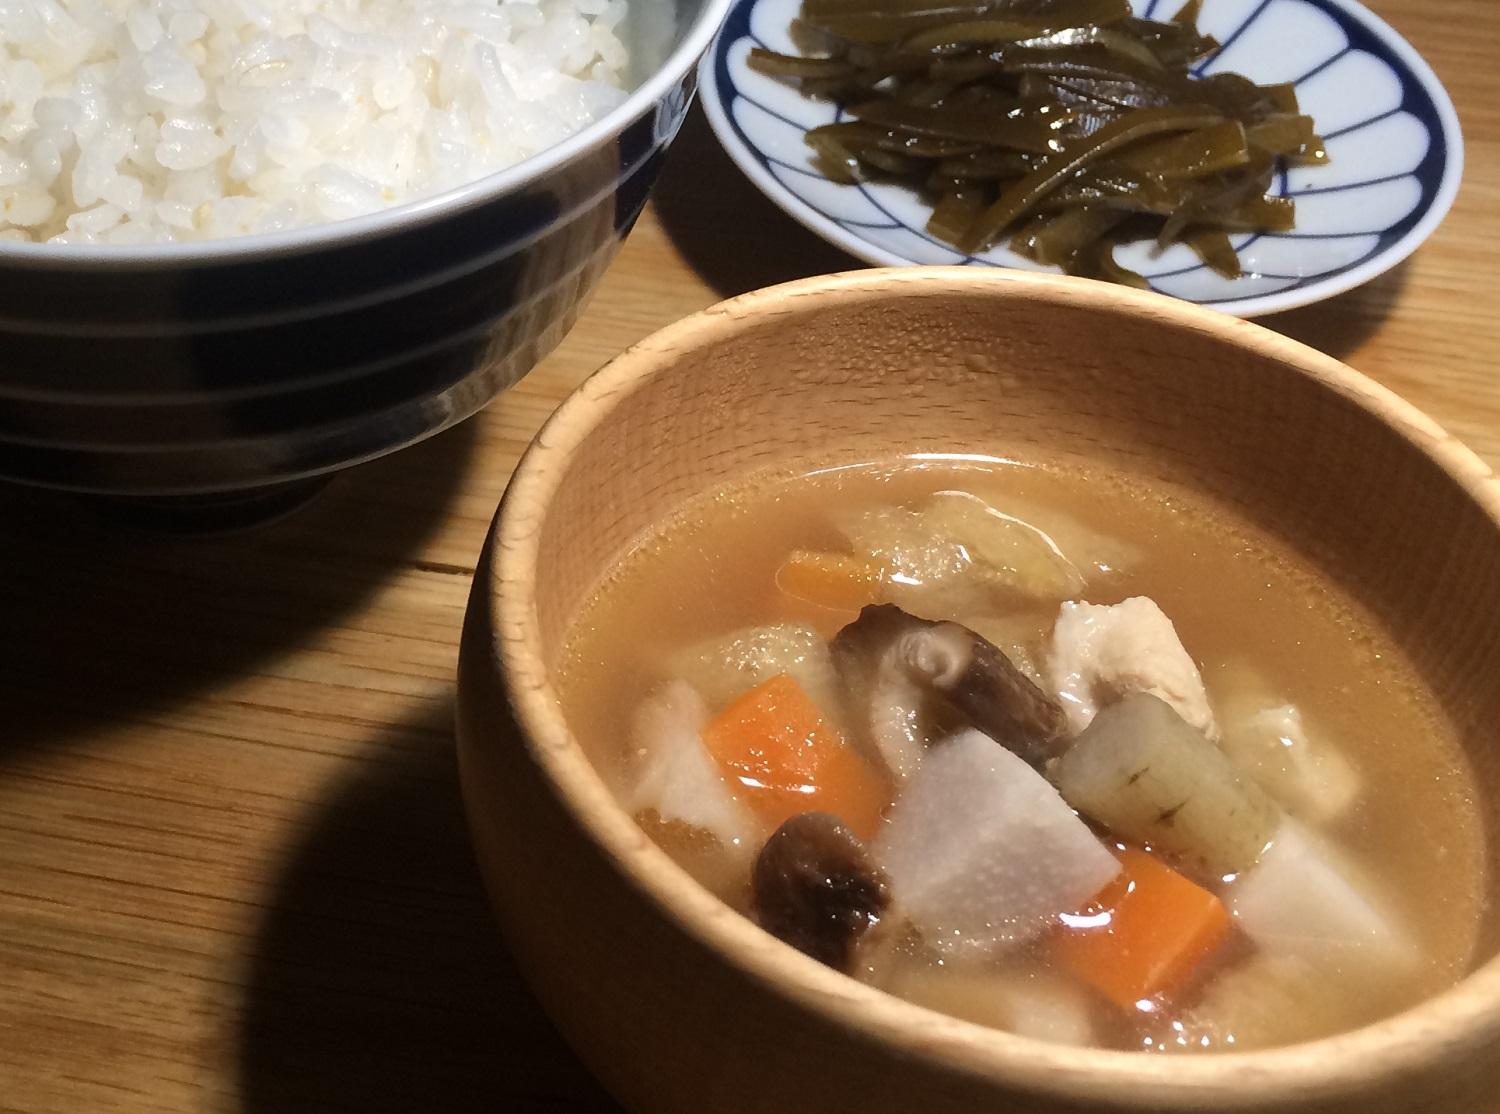 ごはんとサトイモ・レンコン・ニンジン・シイタケなどが入った郷土料理「だぶ」の写真